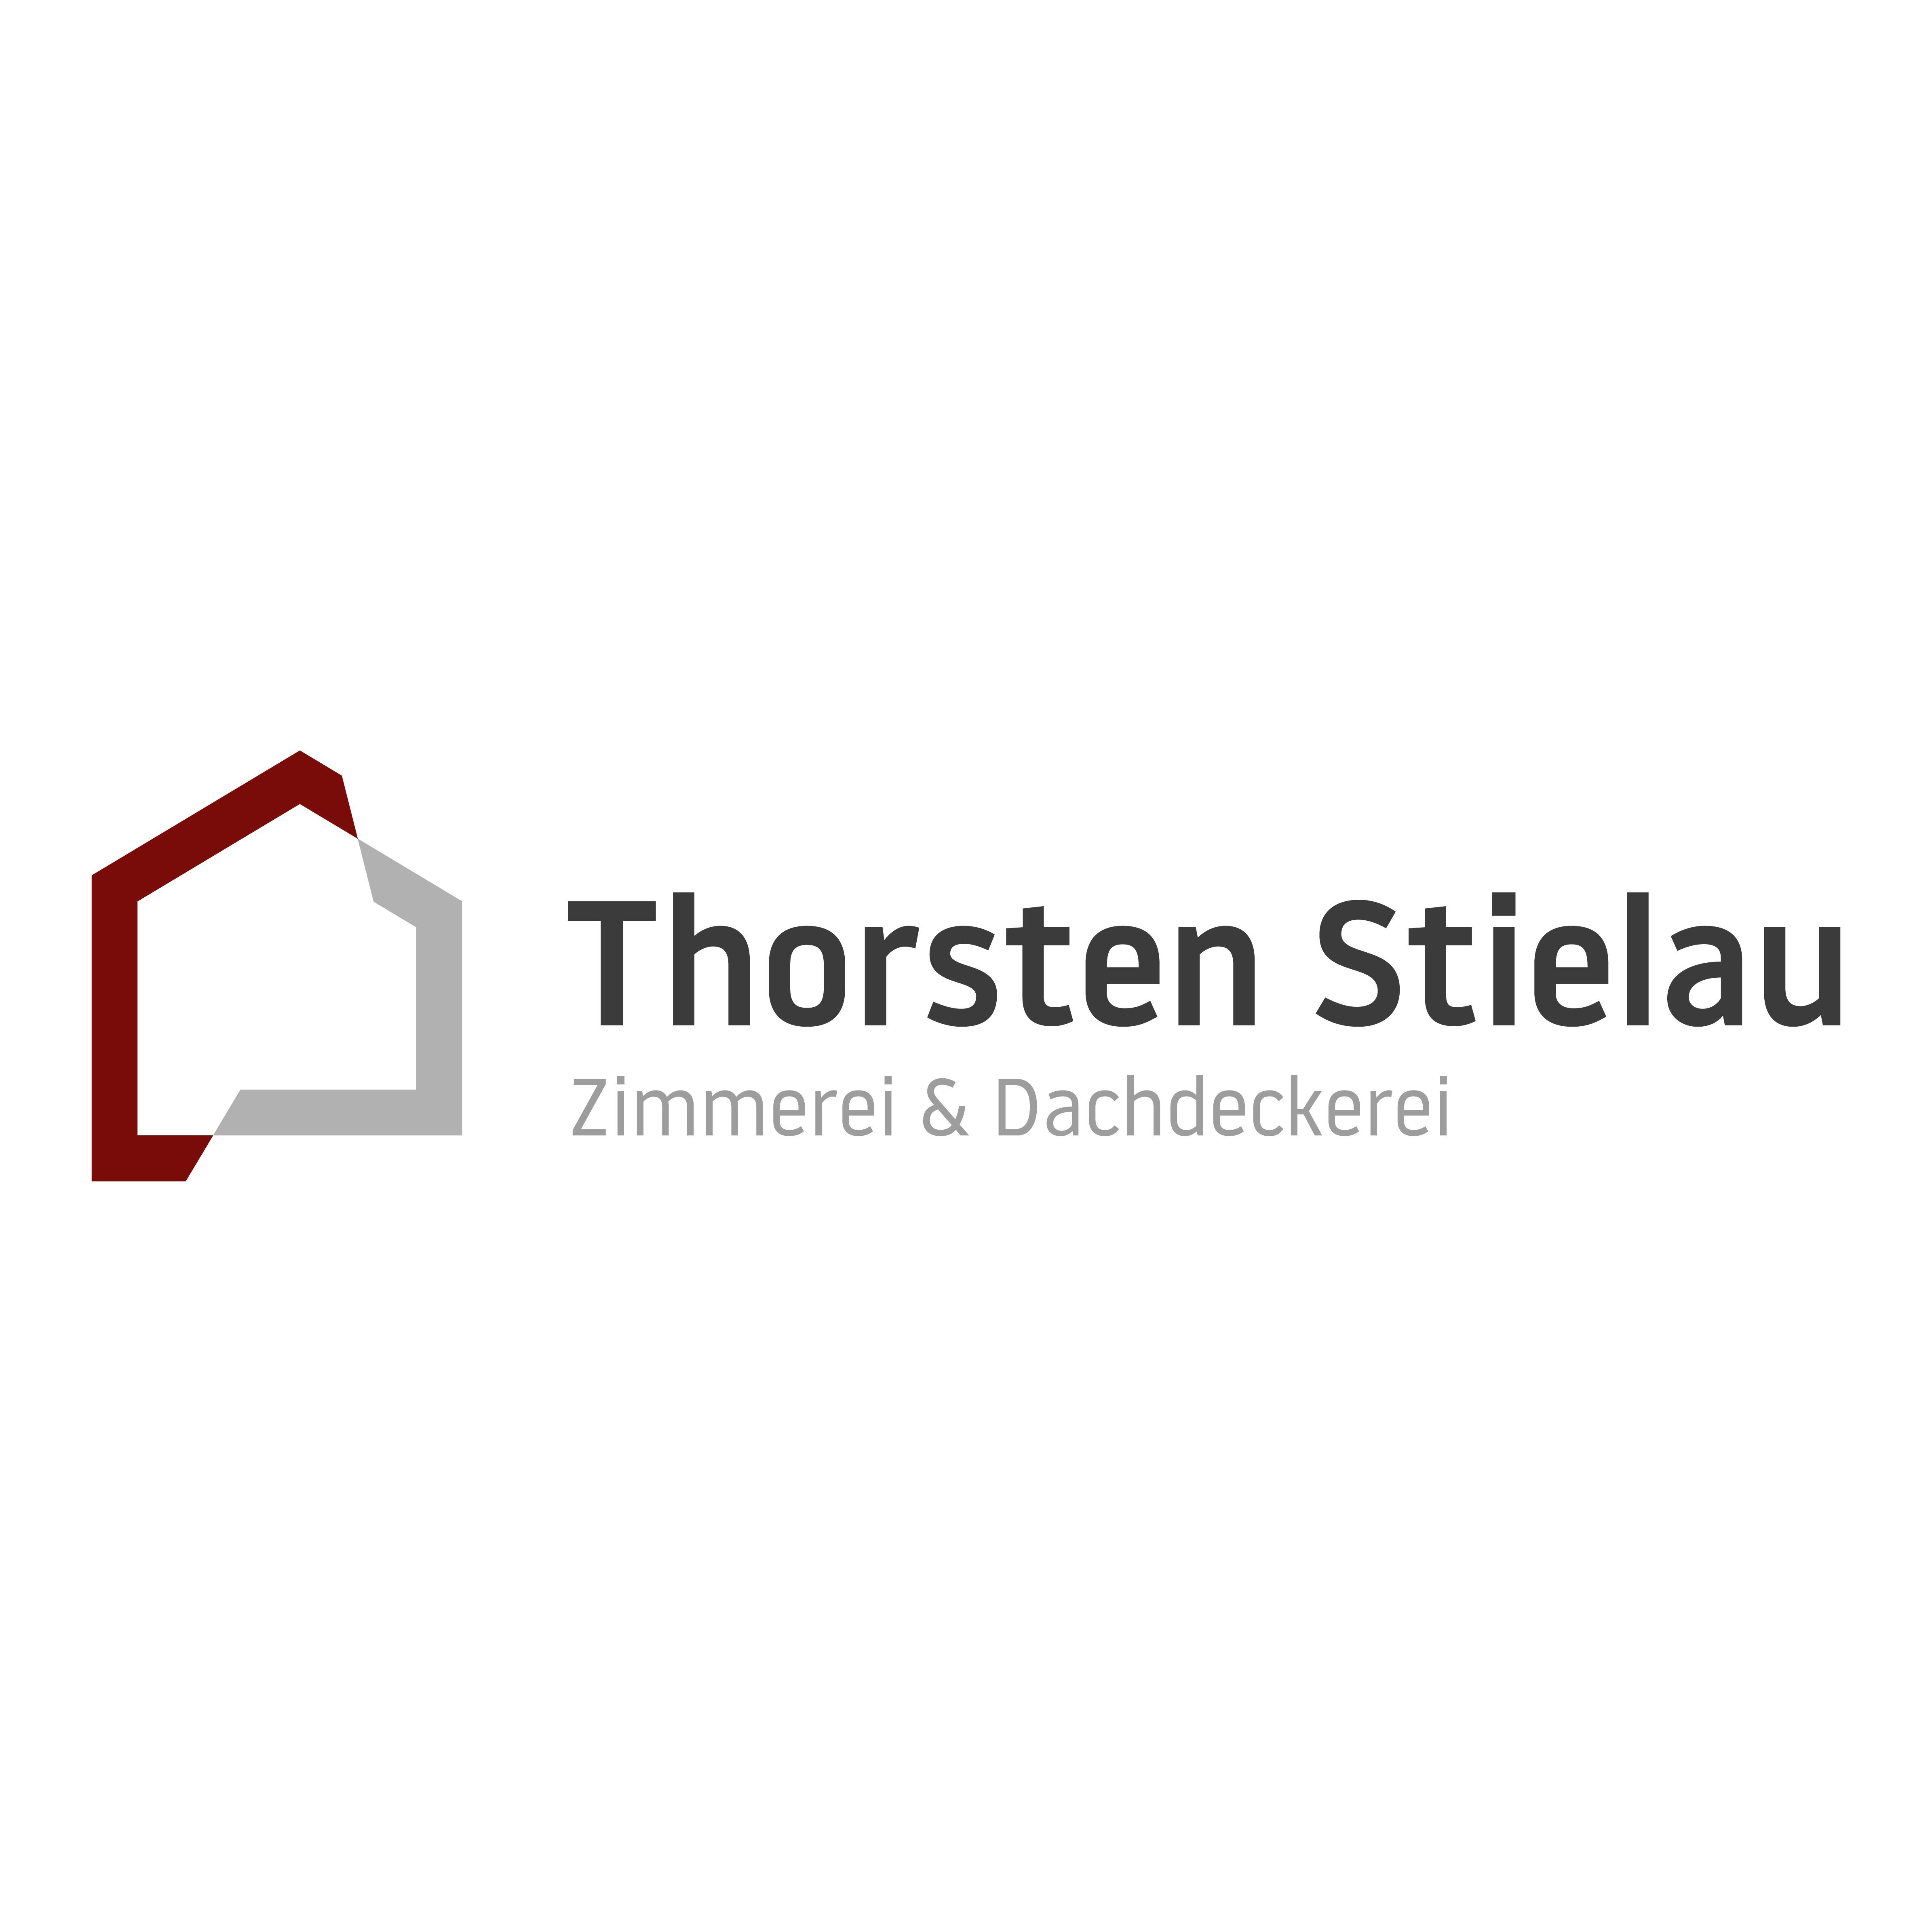 Thorsten Stielau Logo